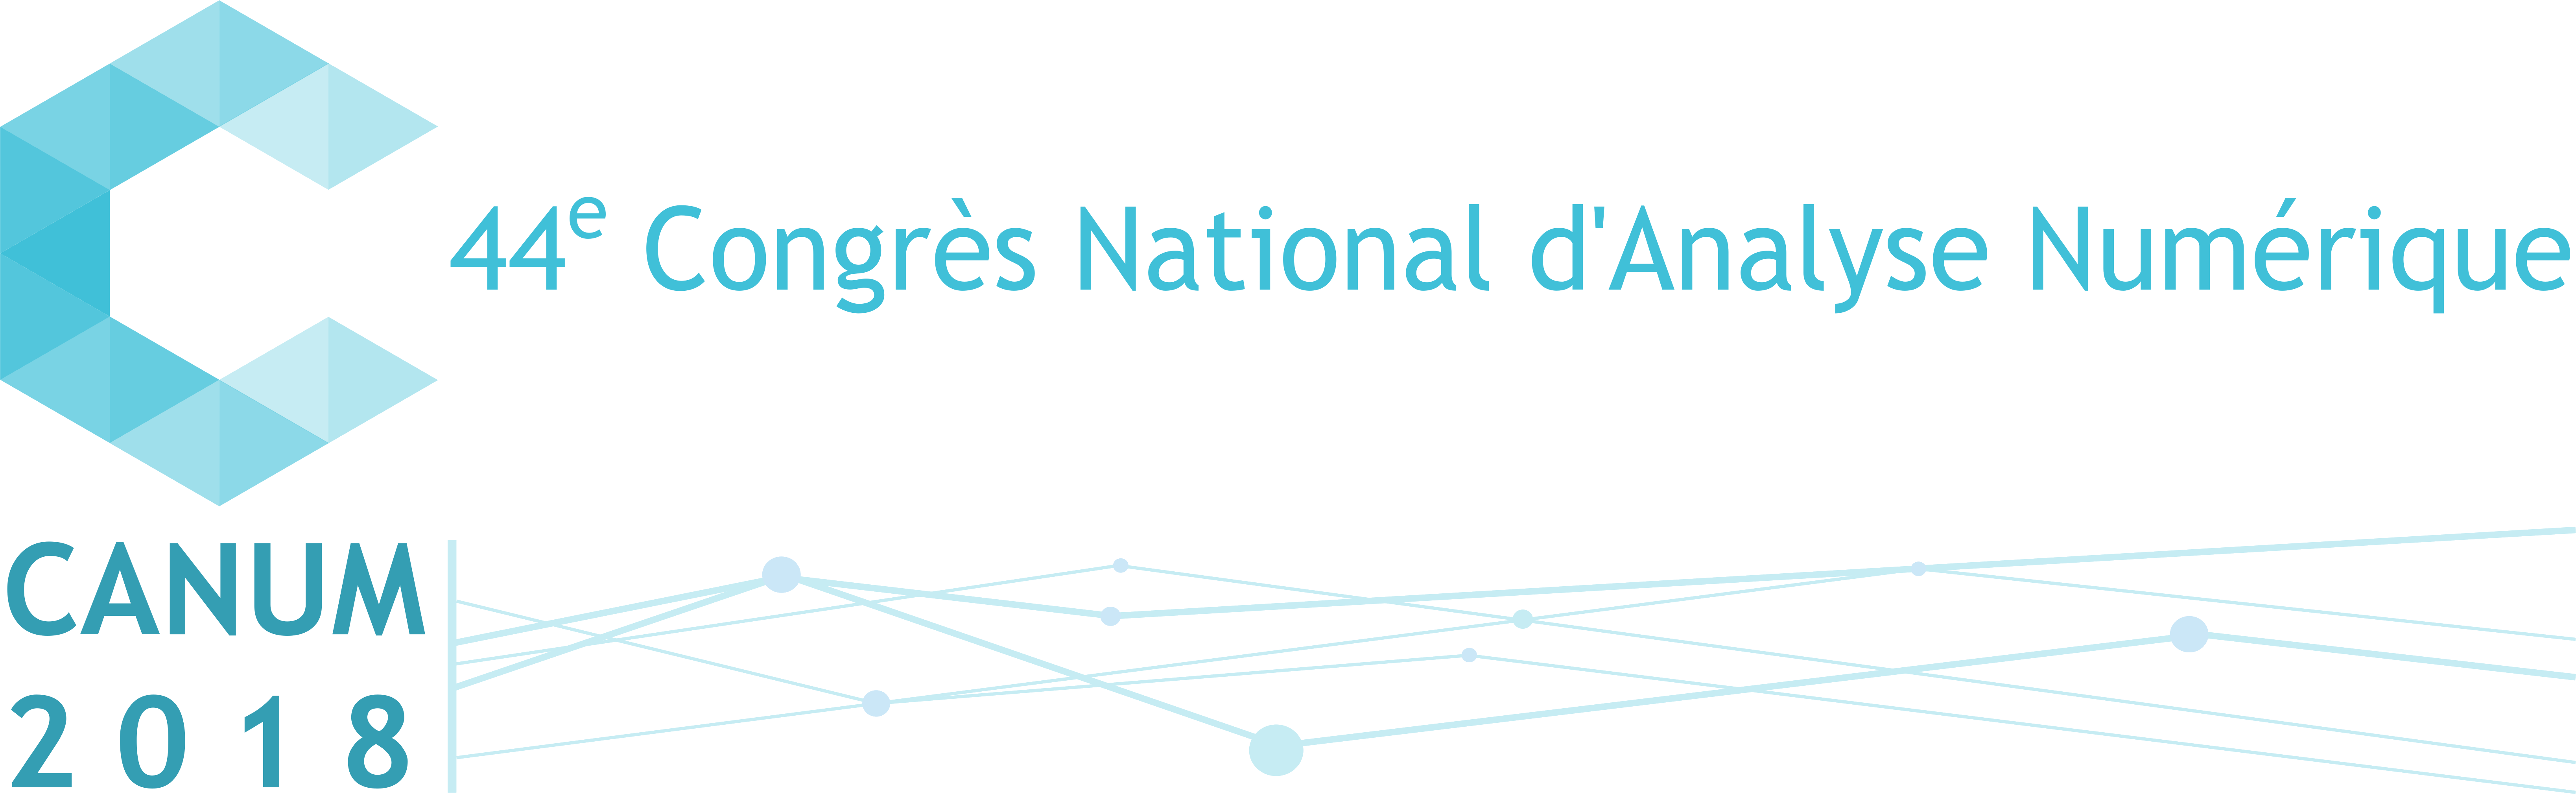 44e Congrès National d'Analyse Numérique